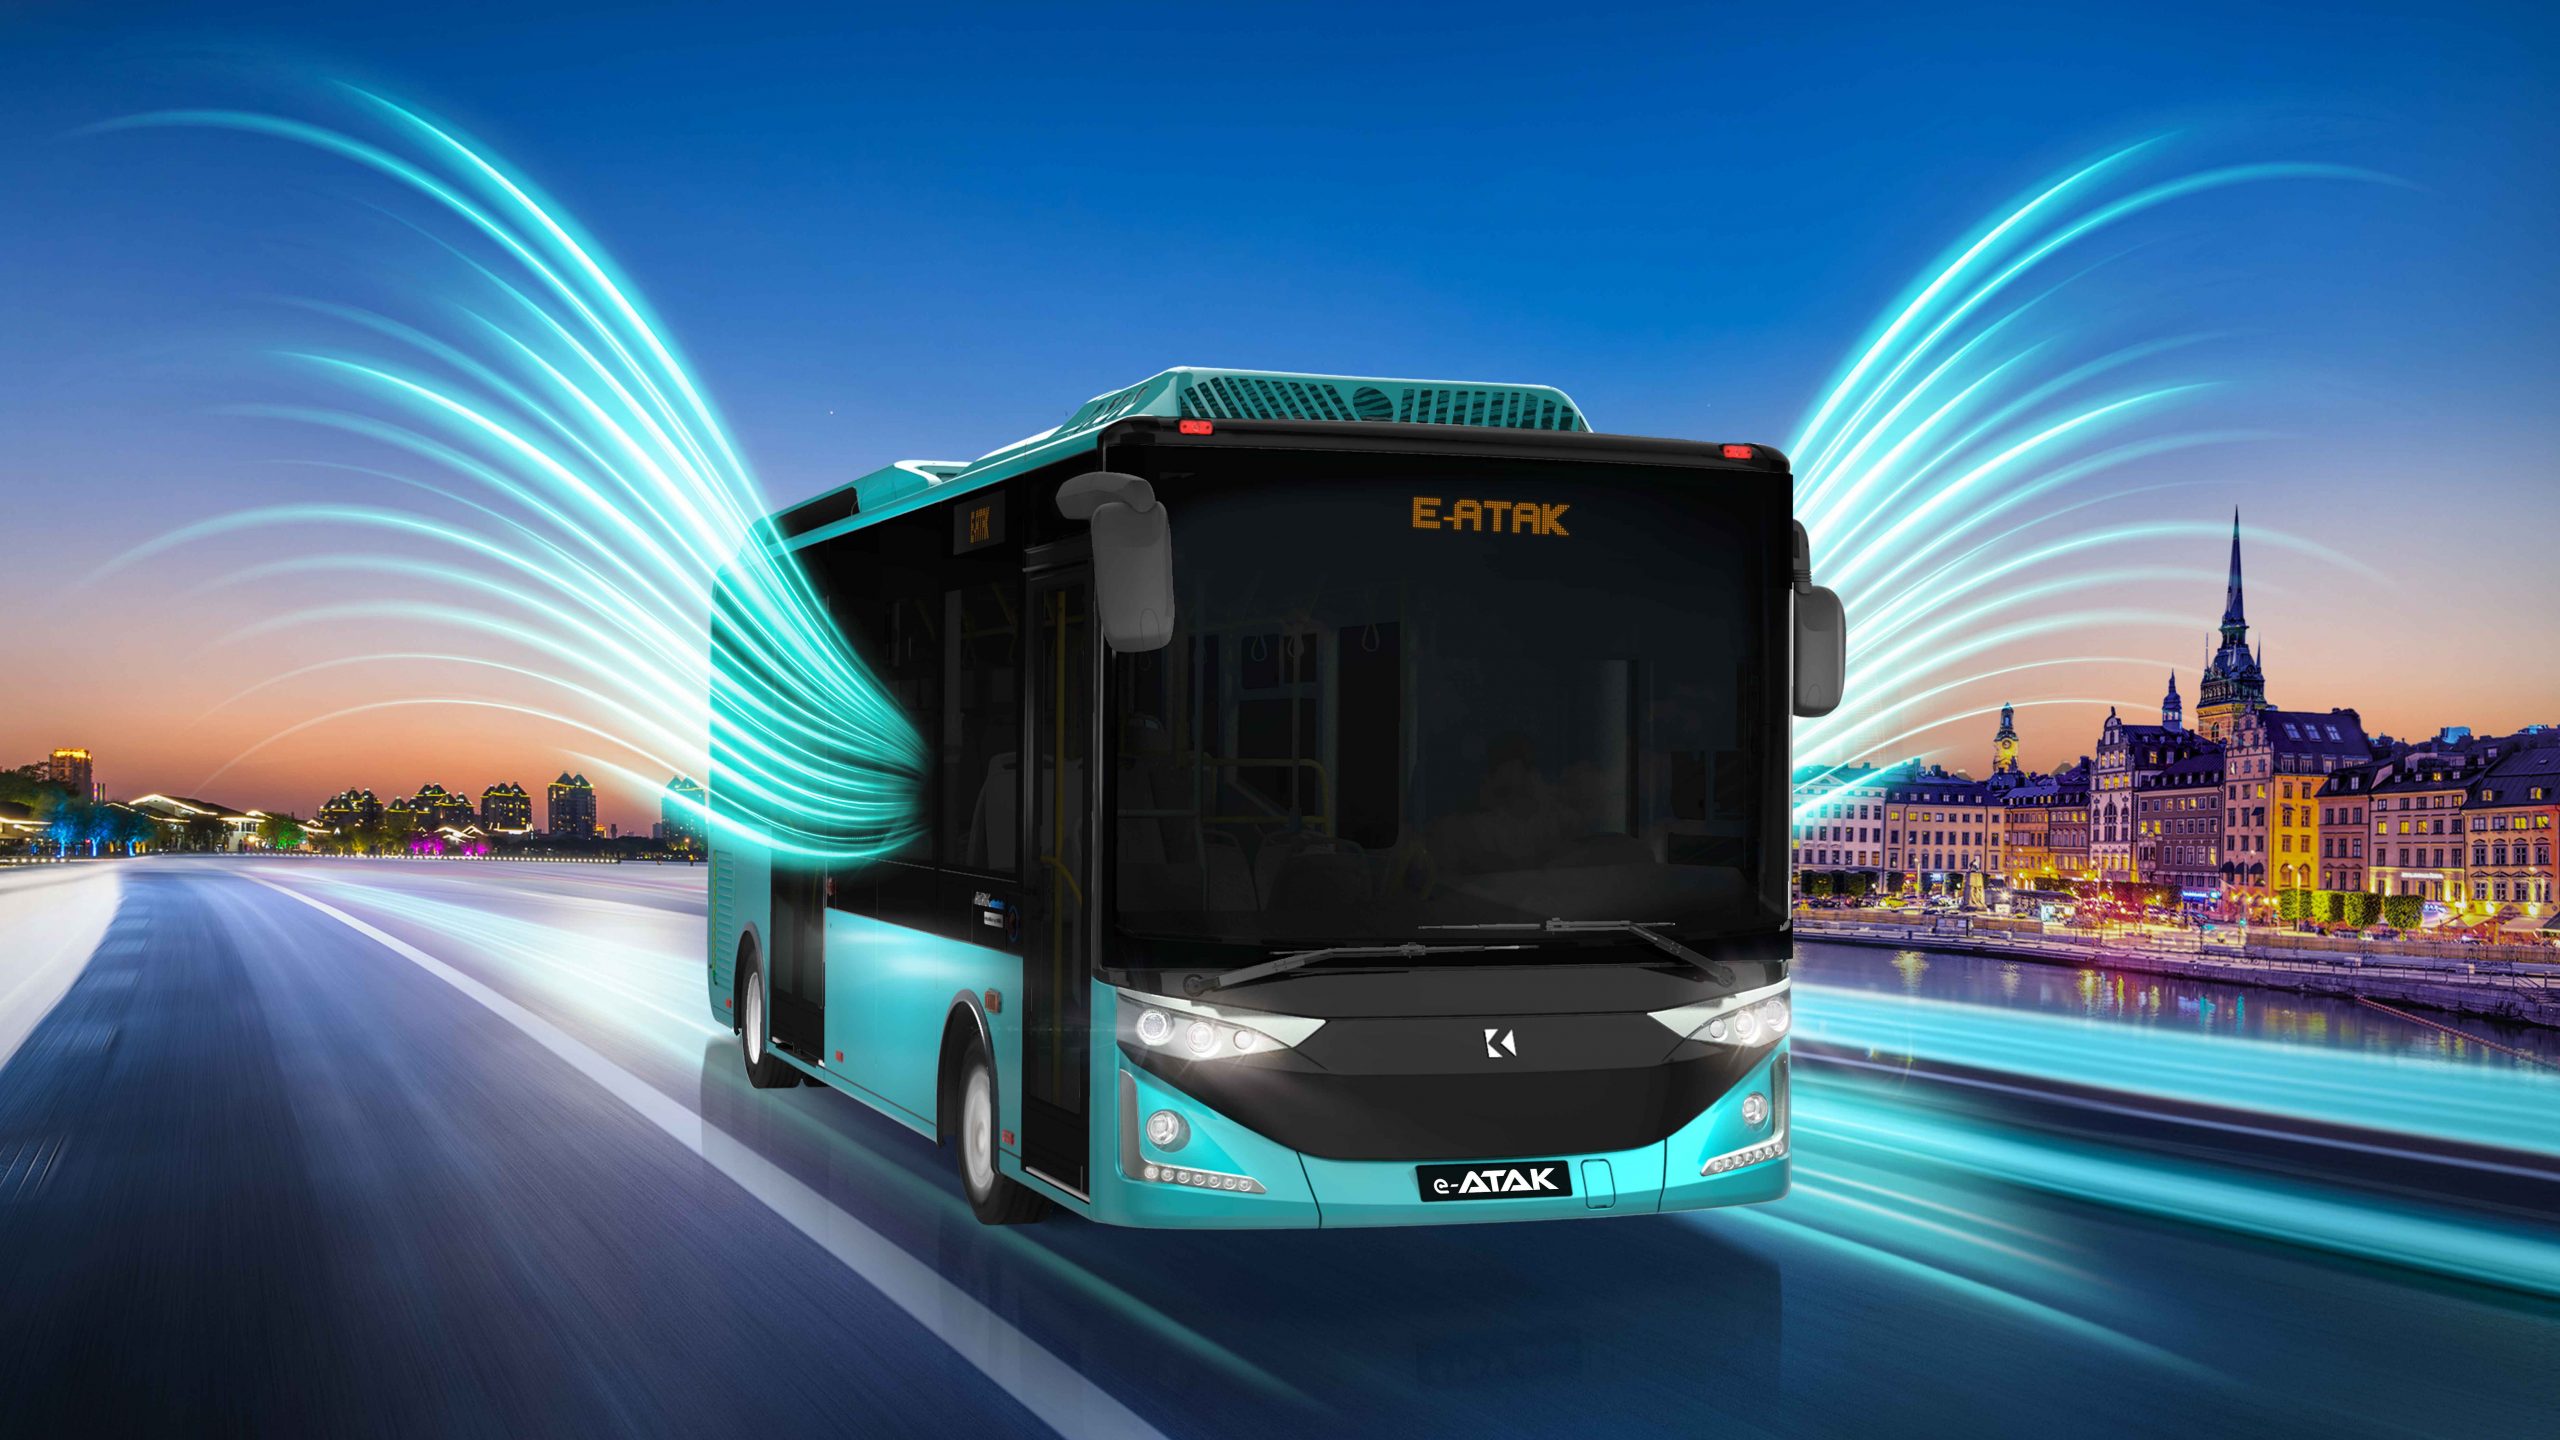 Karsan vrea să ajungă la 180 de autobuze electrice livrate, în România, la final de 2022